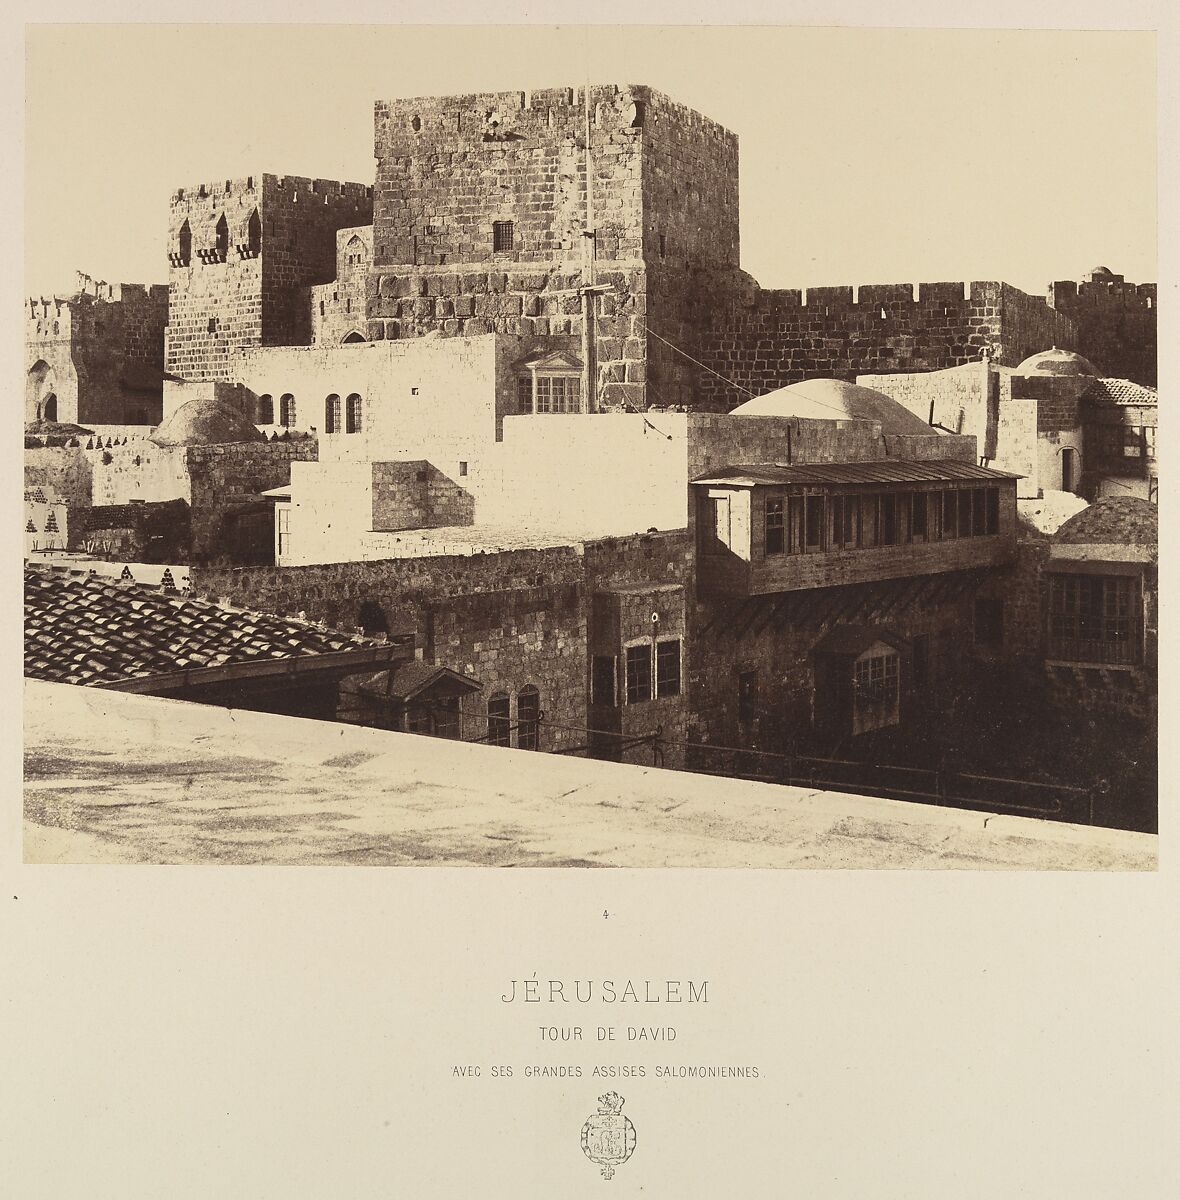 Jérusalem. Tour de David avec ses grandes assises salomoniennes, Louis de Clercq (French, 1837–1901), Albumen silver print from paper negative 